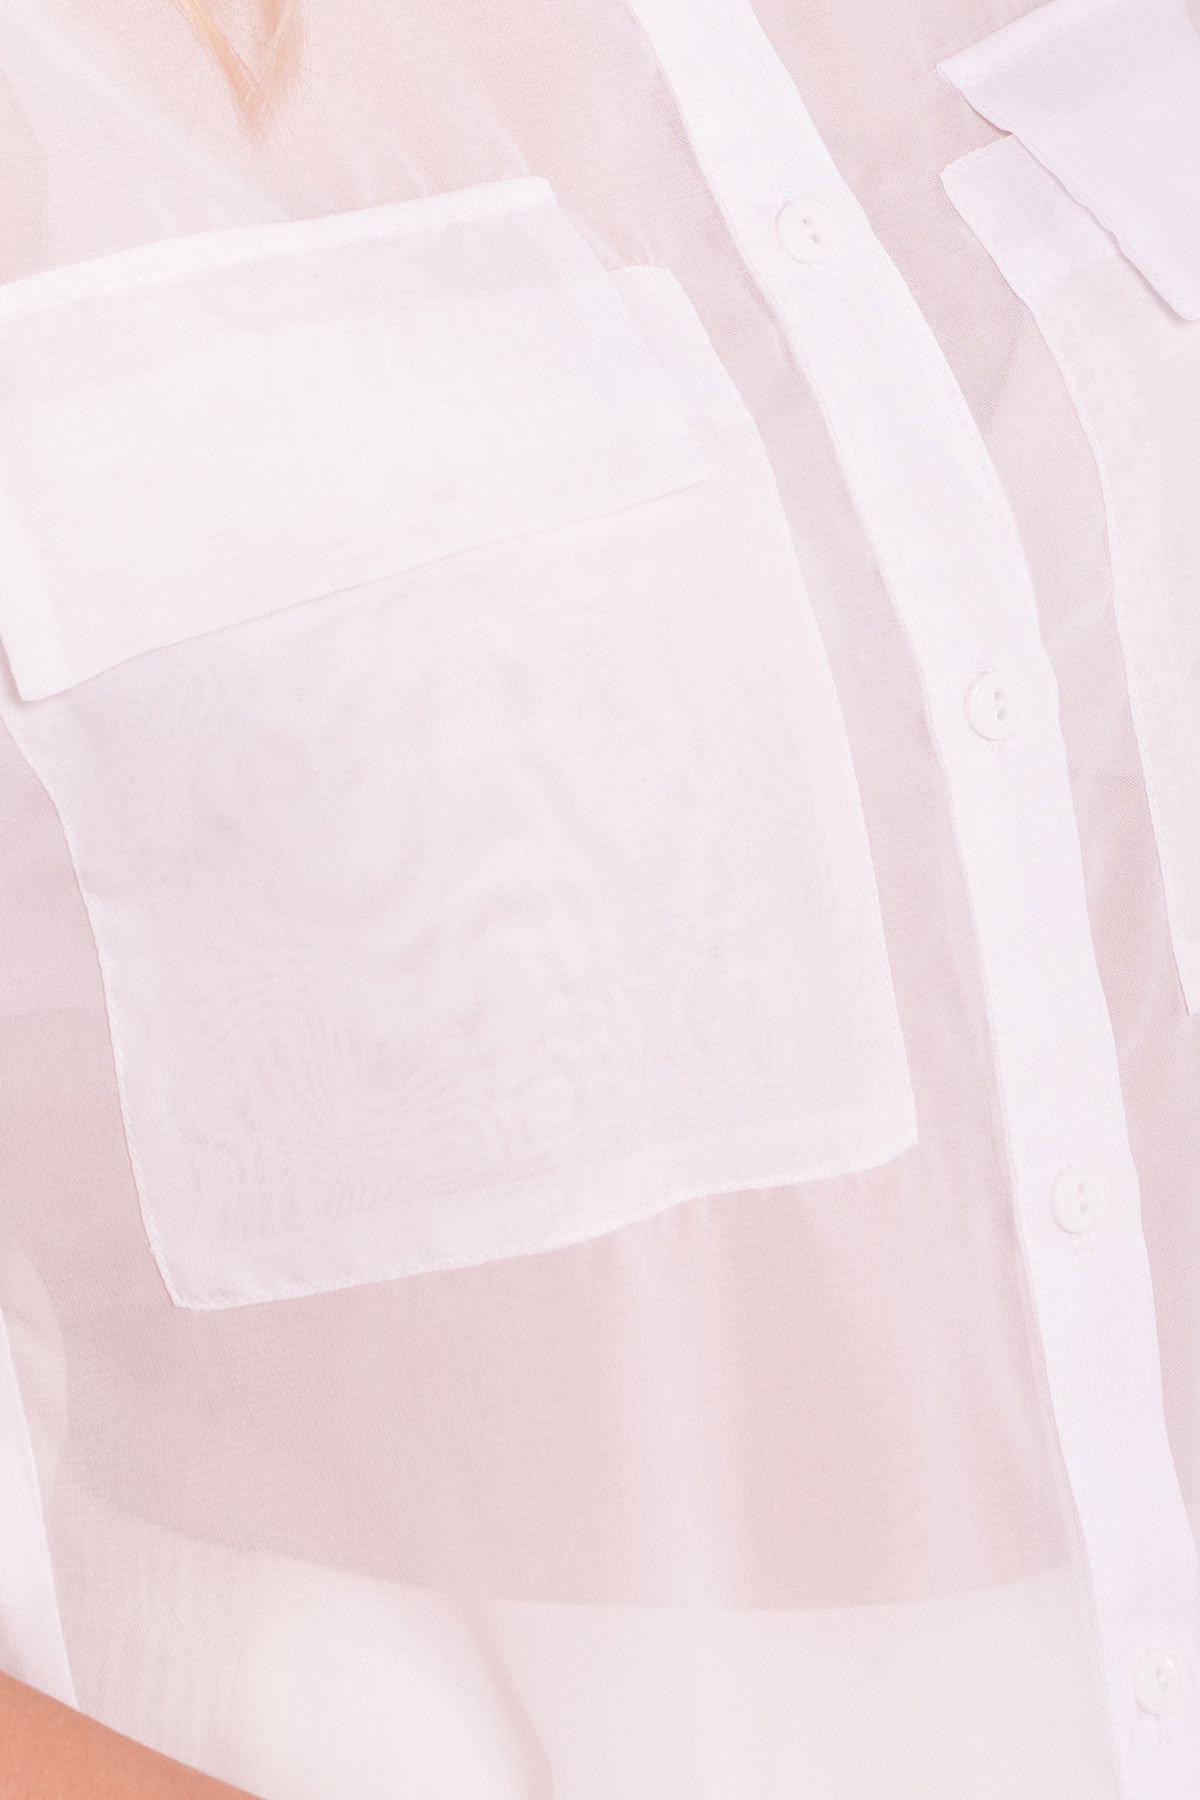 Шифоновая Рубашка Айра 7456 АРТ. 43421 Цвет: Белый - фото 4, интернет магазин tm-modus.ru